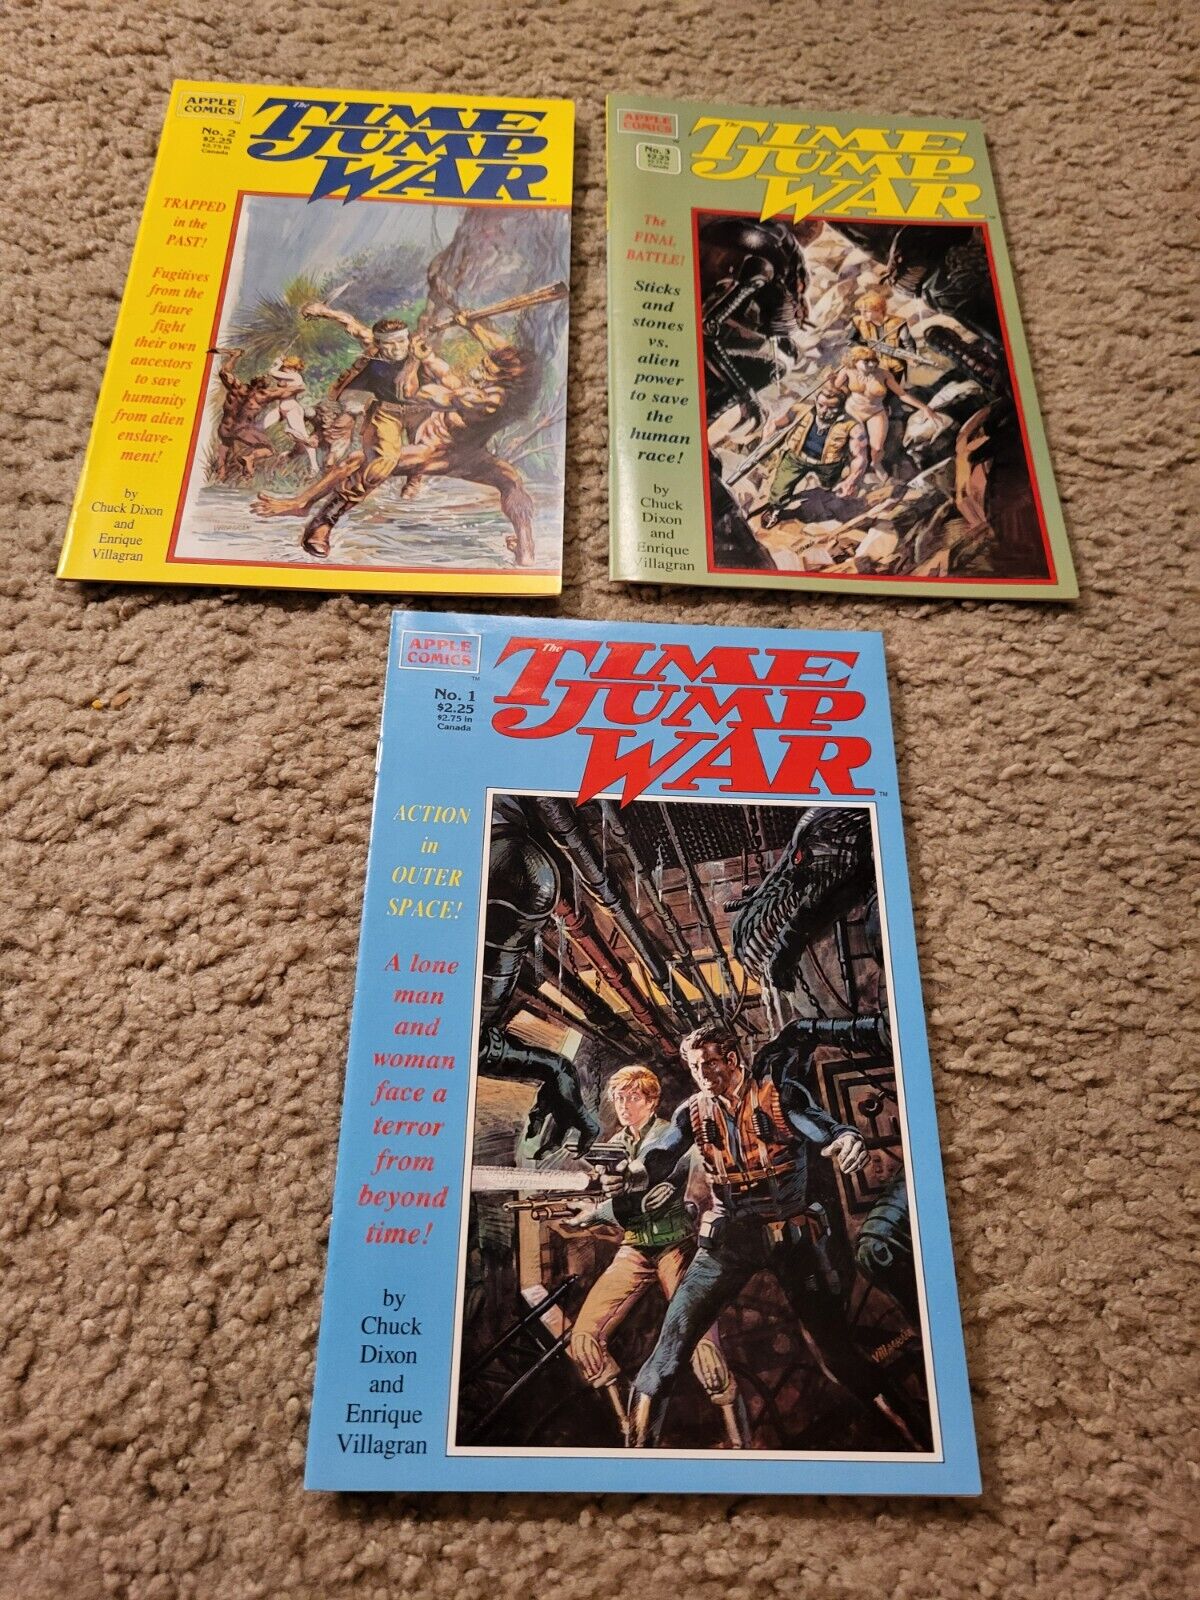 3 lot Time Jump War 1,2,3 Apple Comics COMPLETE SET SERIES 1989 HIGH GRADE